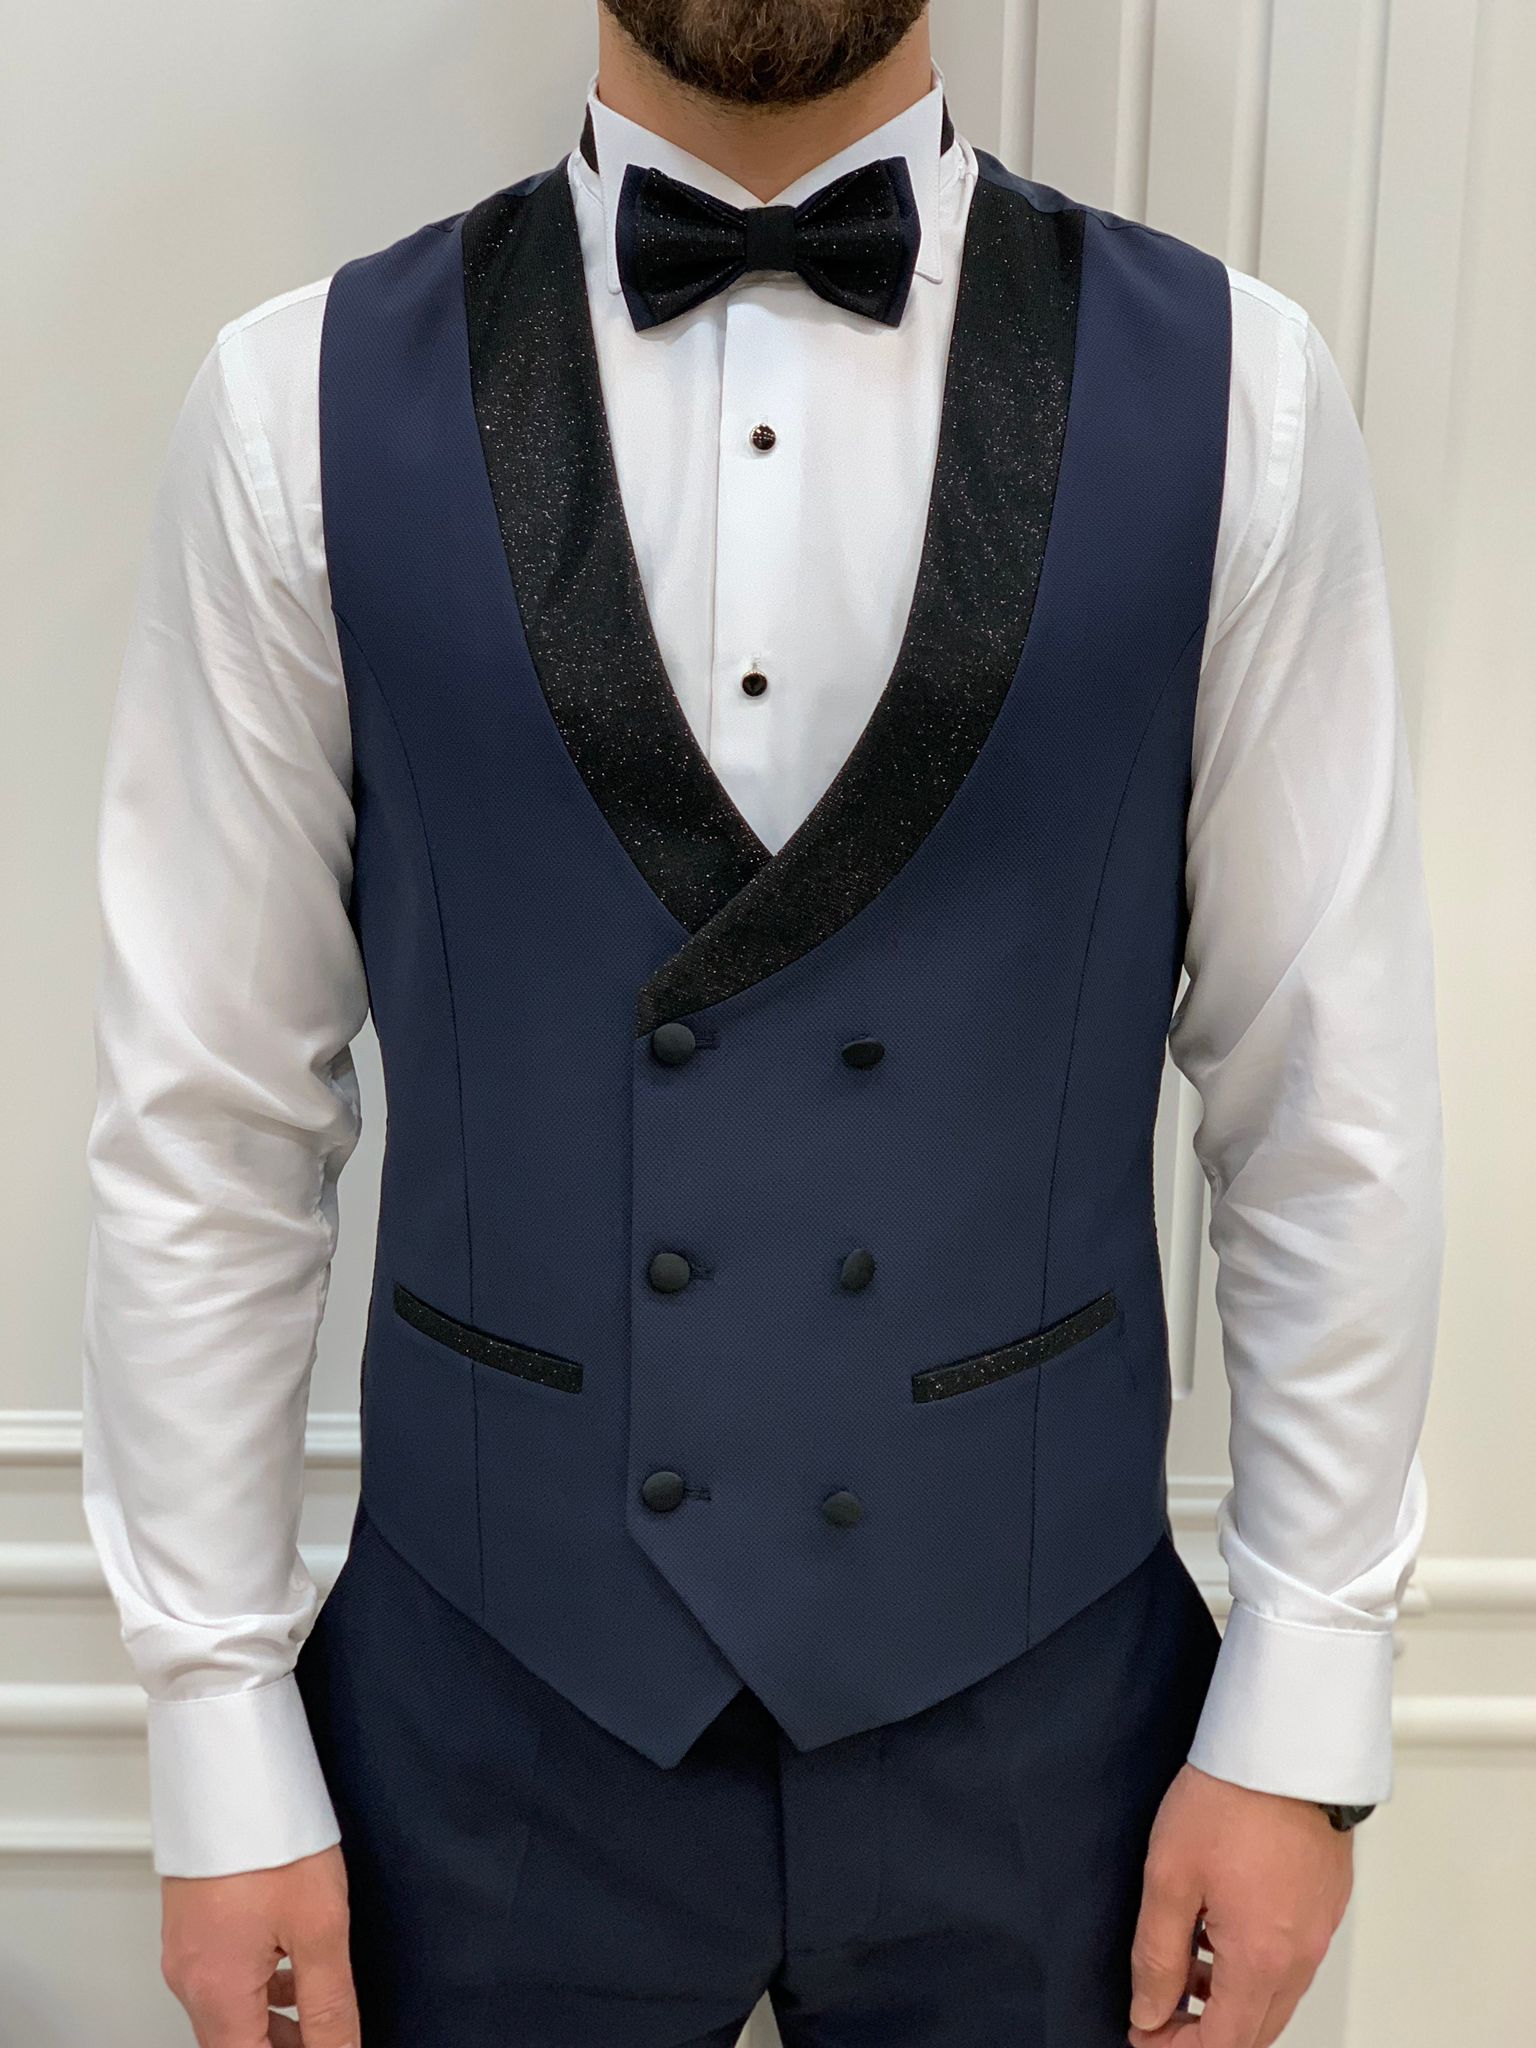 Bright Blue Suit | Blue Wedding Suit Rental | Generation Tux